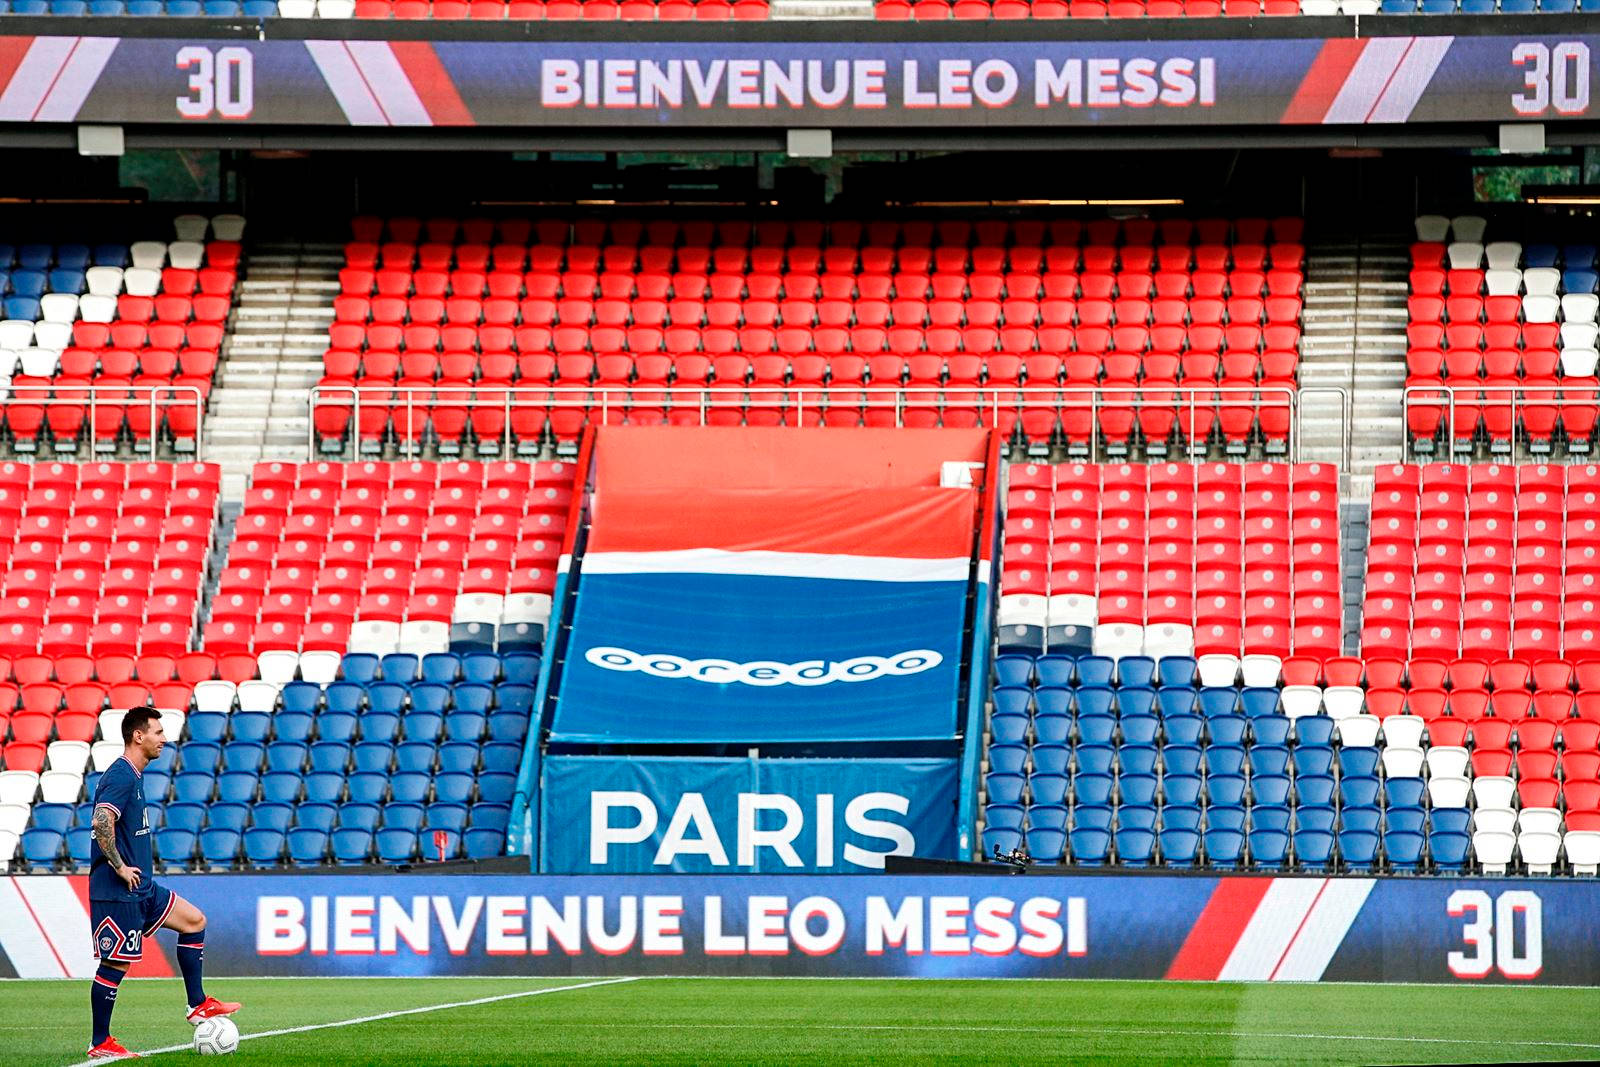 Messi Psg Stadium Seats Picture